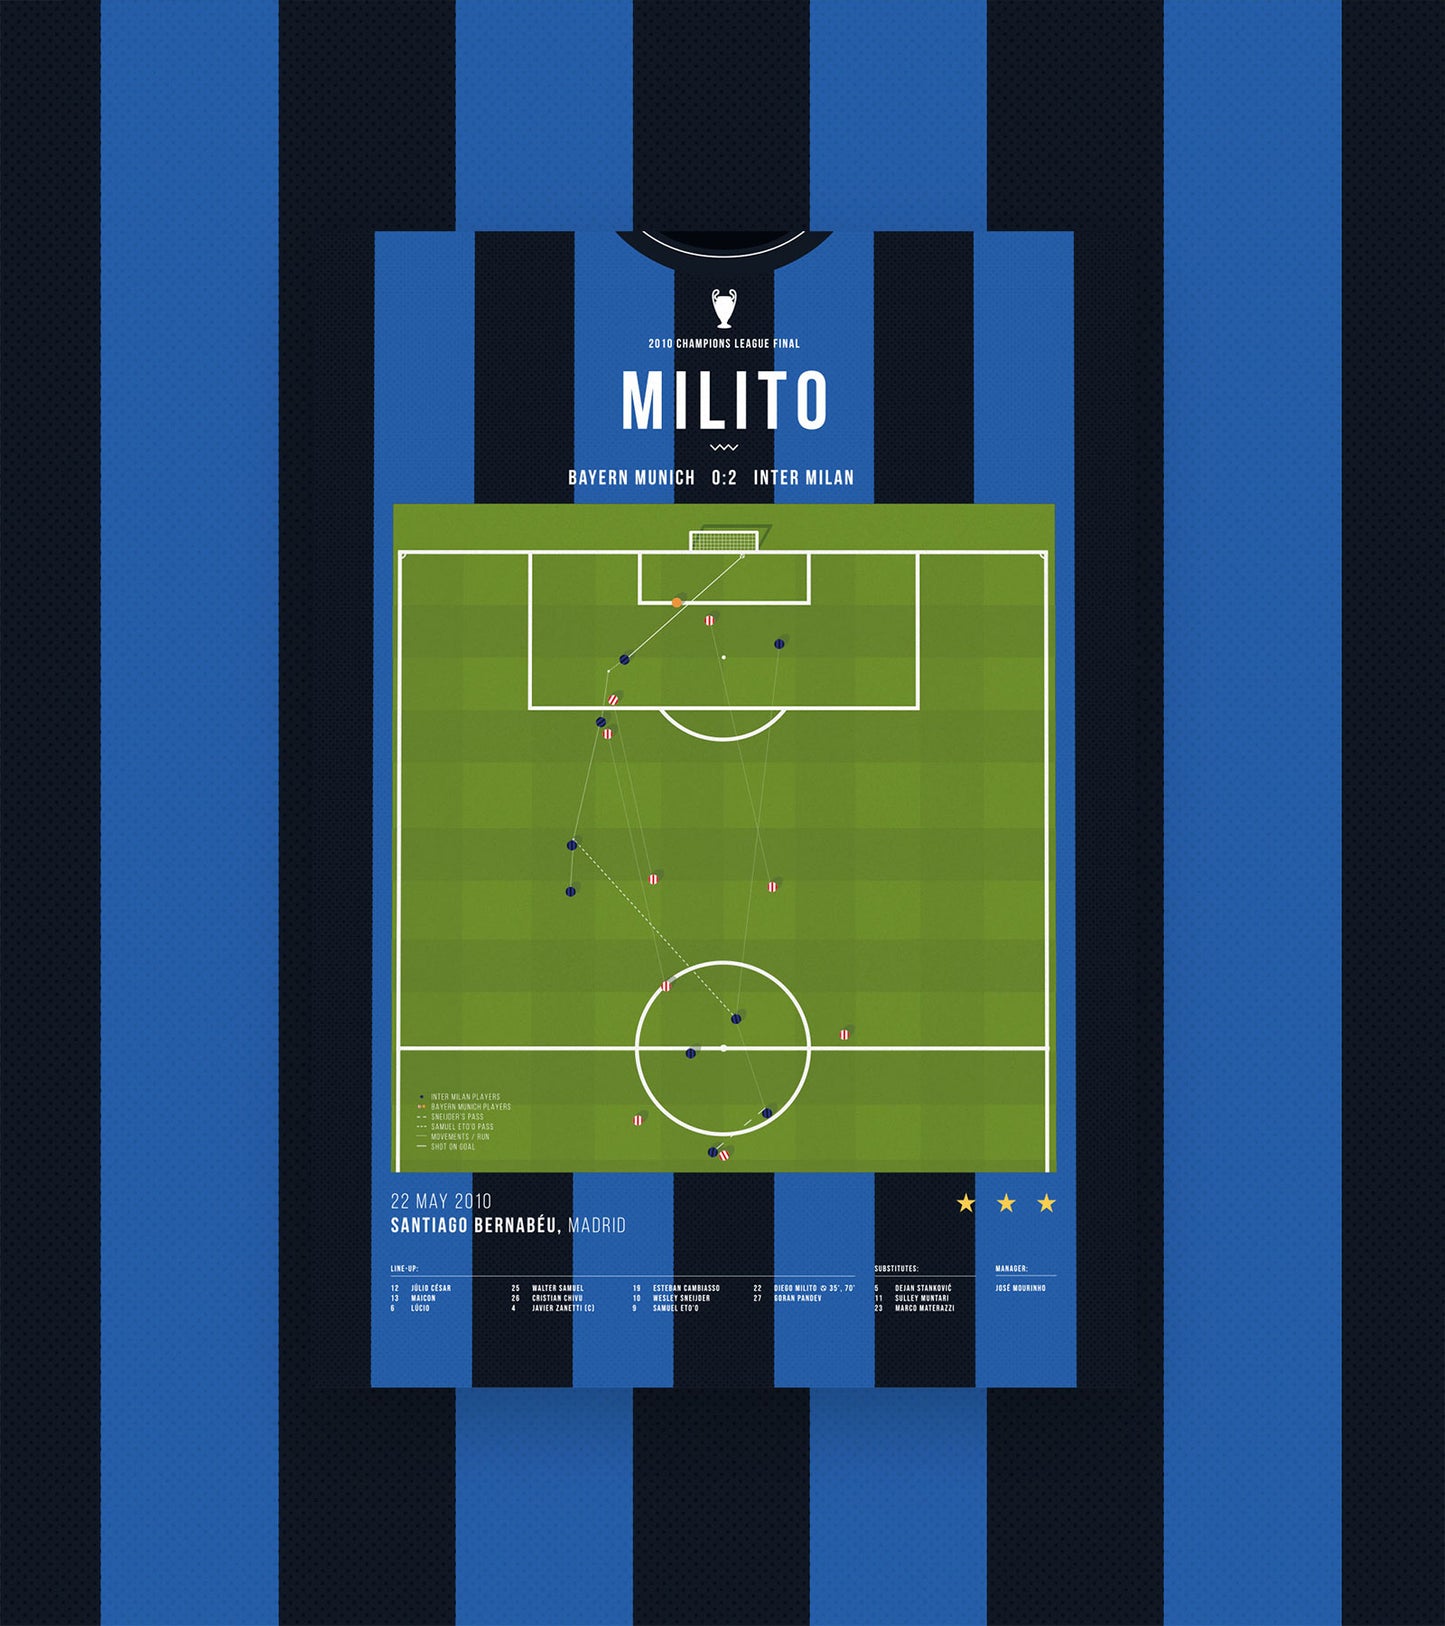 El gol de la victoria de Diego Milito en la UCL contra el Bayern